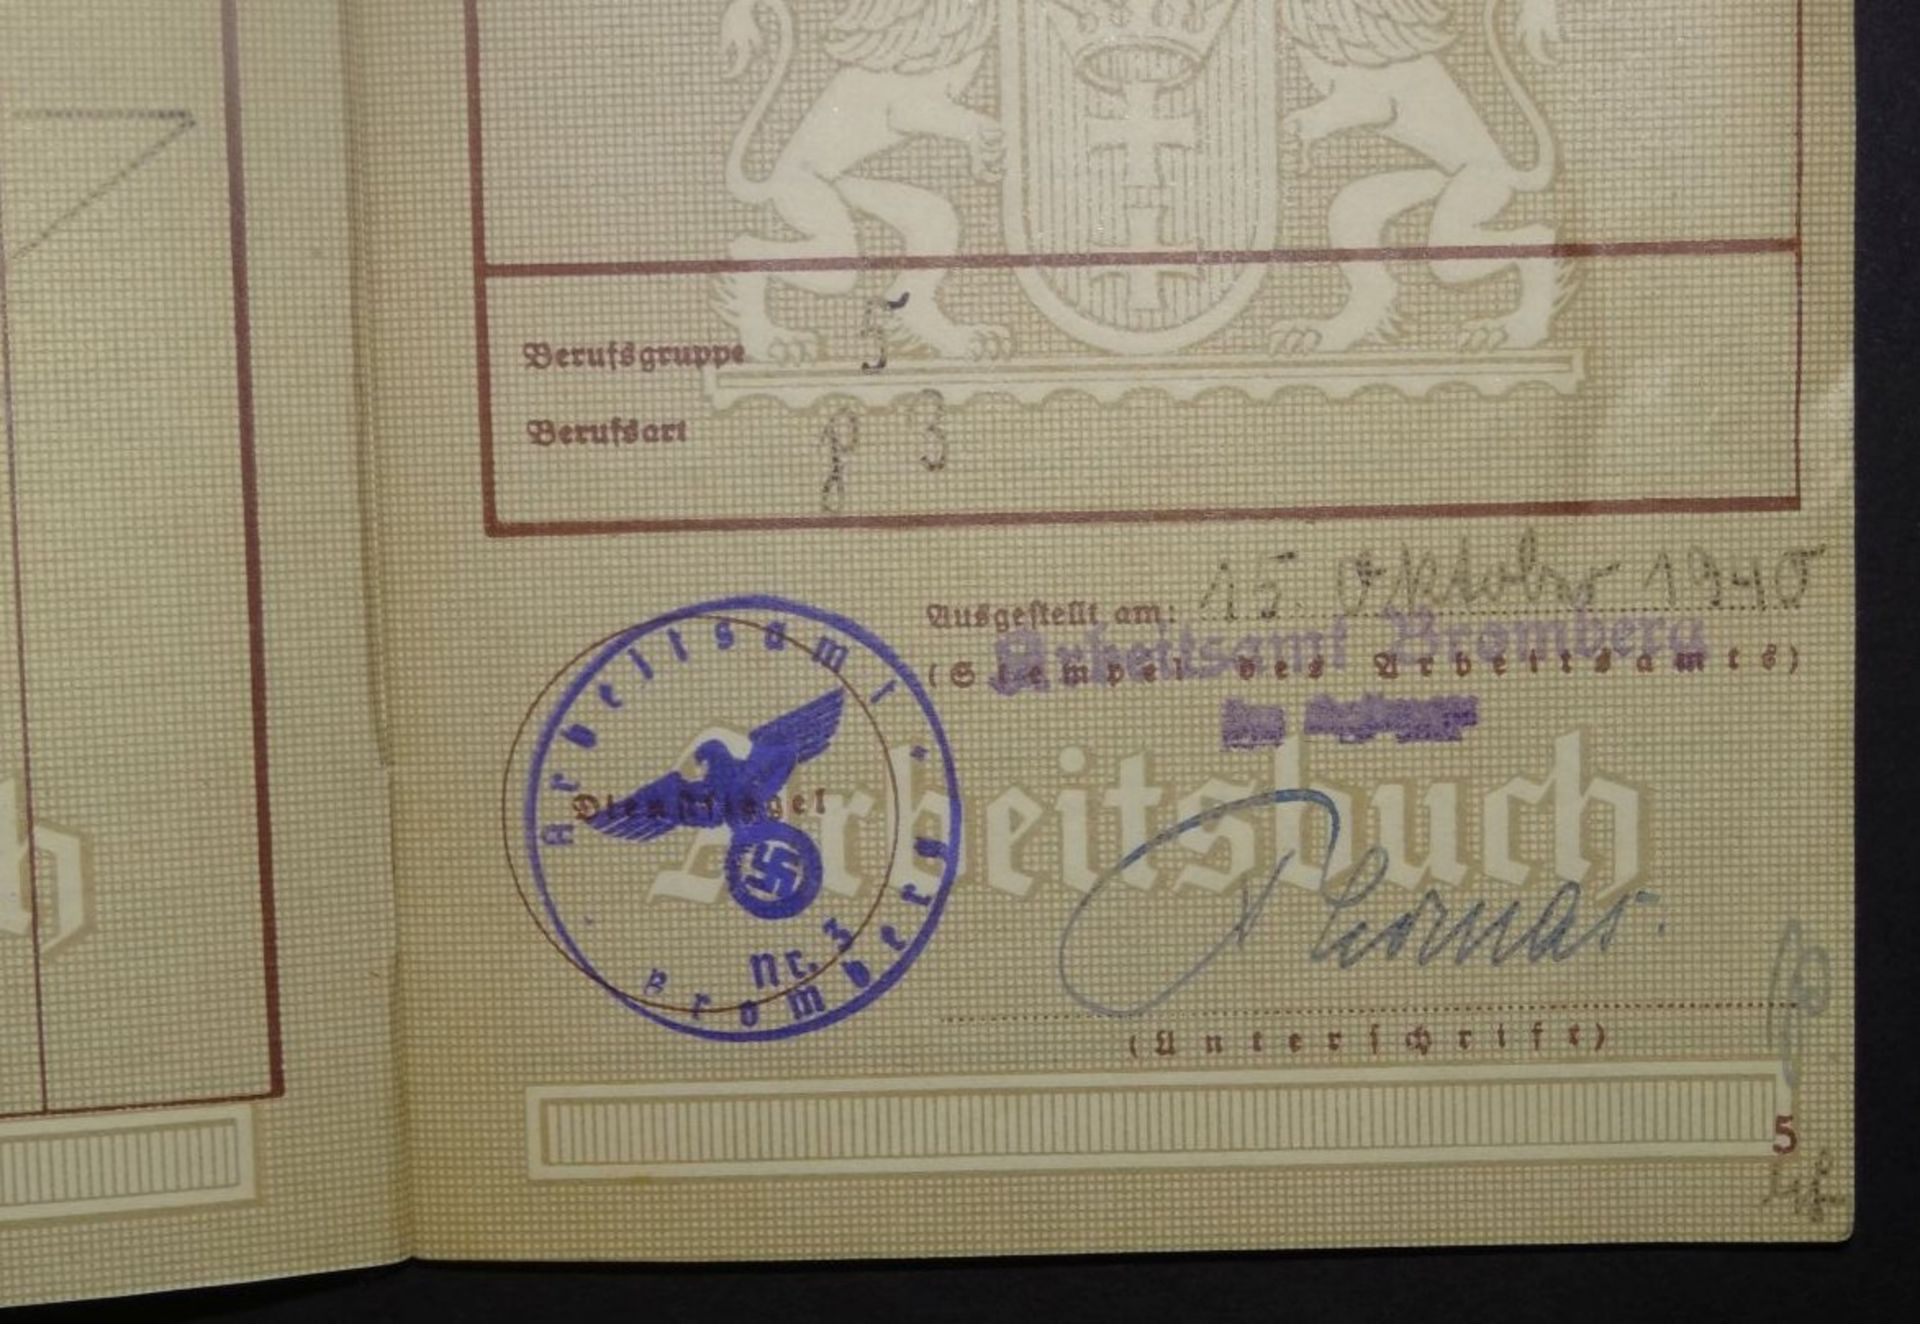 Arbeitsbuch "Freie Stadt Danzig" ab 1934- - -22.61 % buyer's premium on the hammer priceVAT margin - Bild 5 aus 6